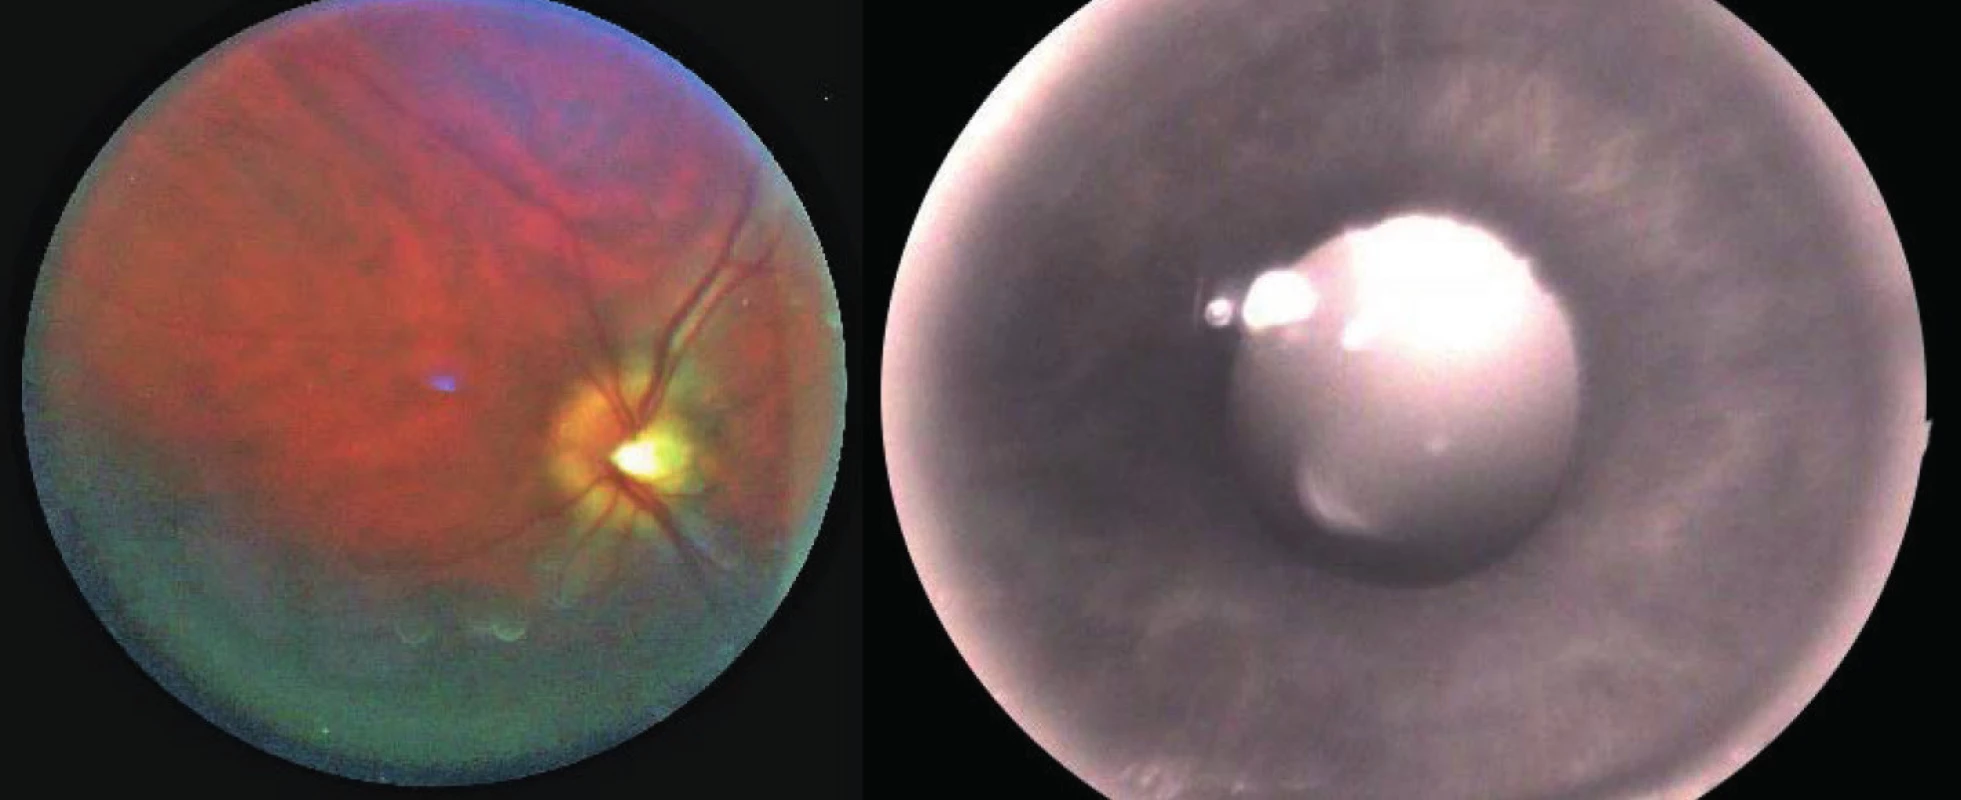 Snímek sítnice (vlevo) a duhovky (vpravo) oka z našeho laboratorního zařízení